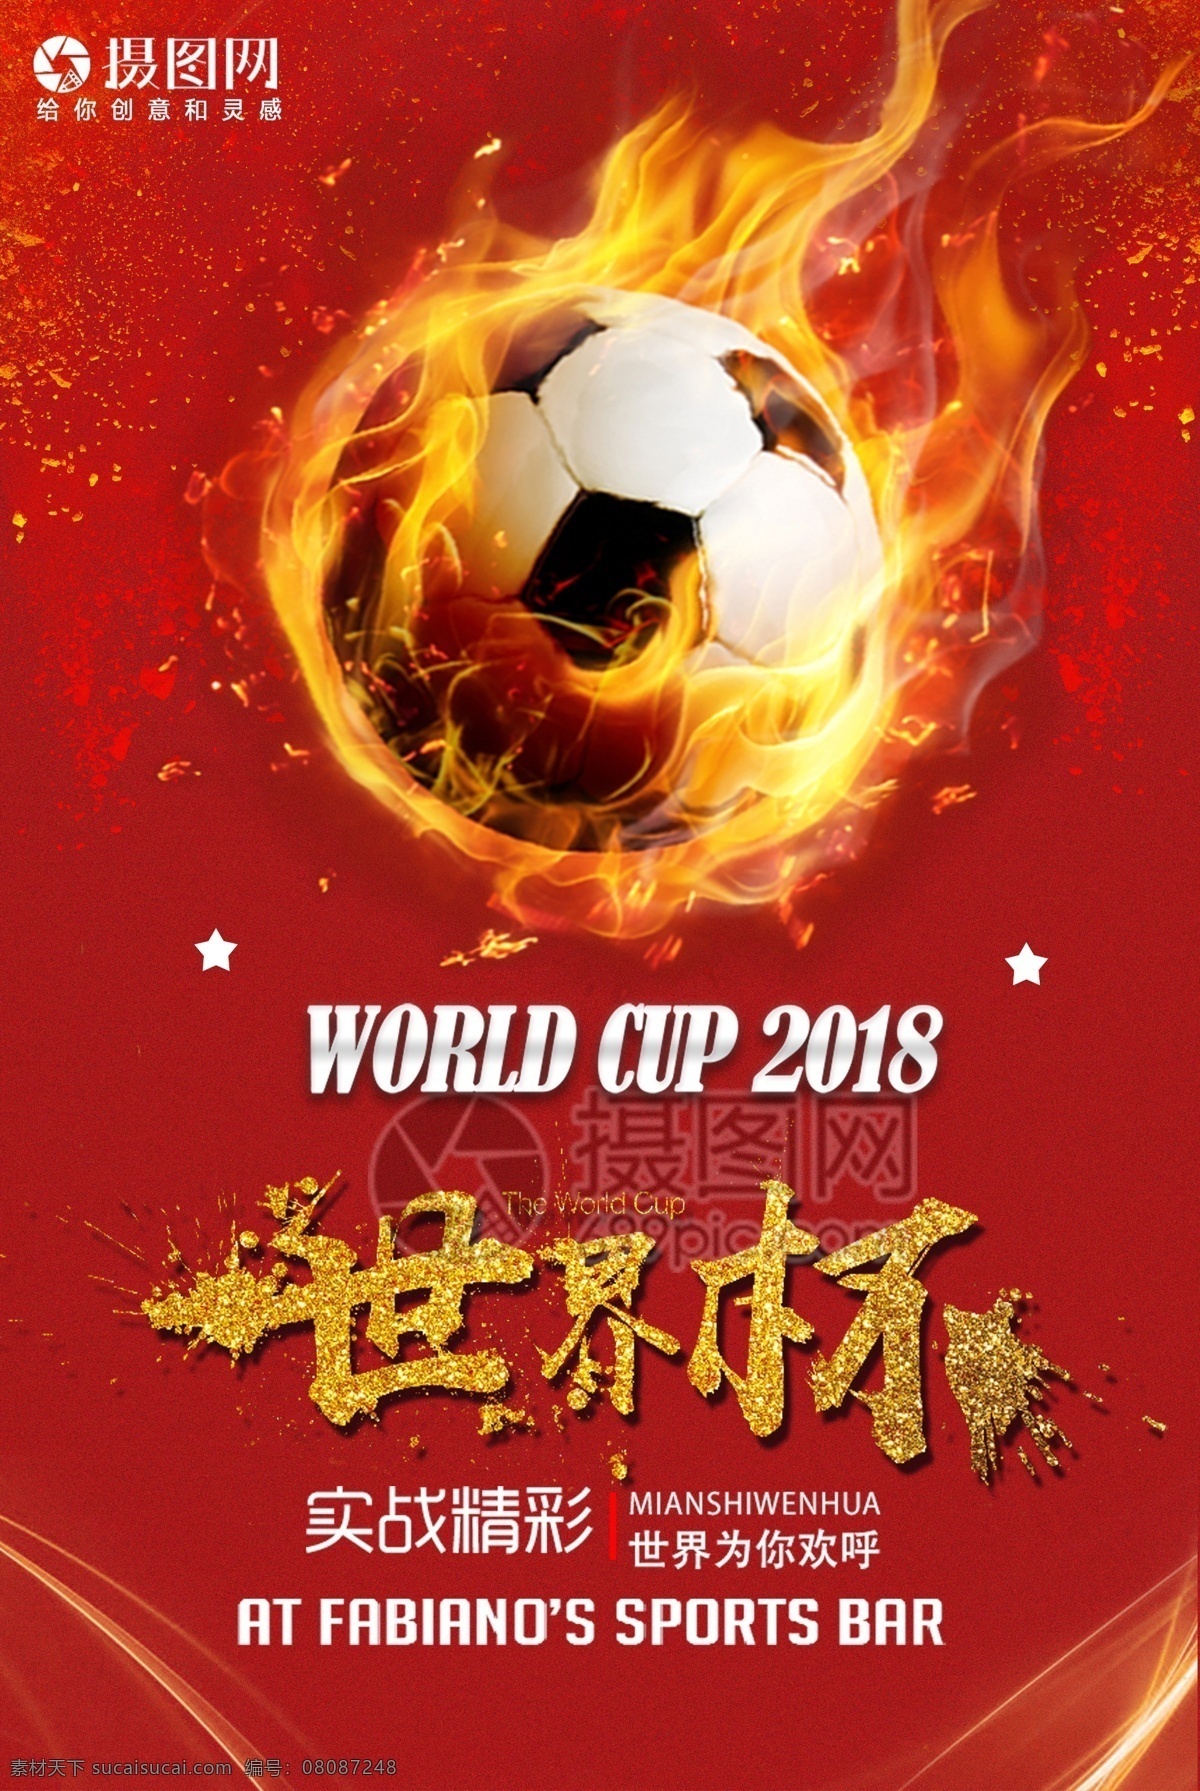 足球赛 世界杯 海报 足球友谊赛 足球背景 足球创意 足球运动 足球俱乐部 世界杯海报 足球赛海报